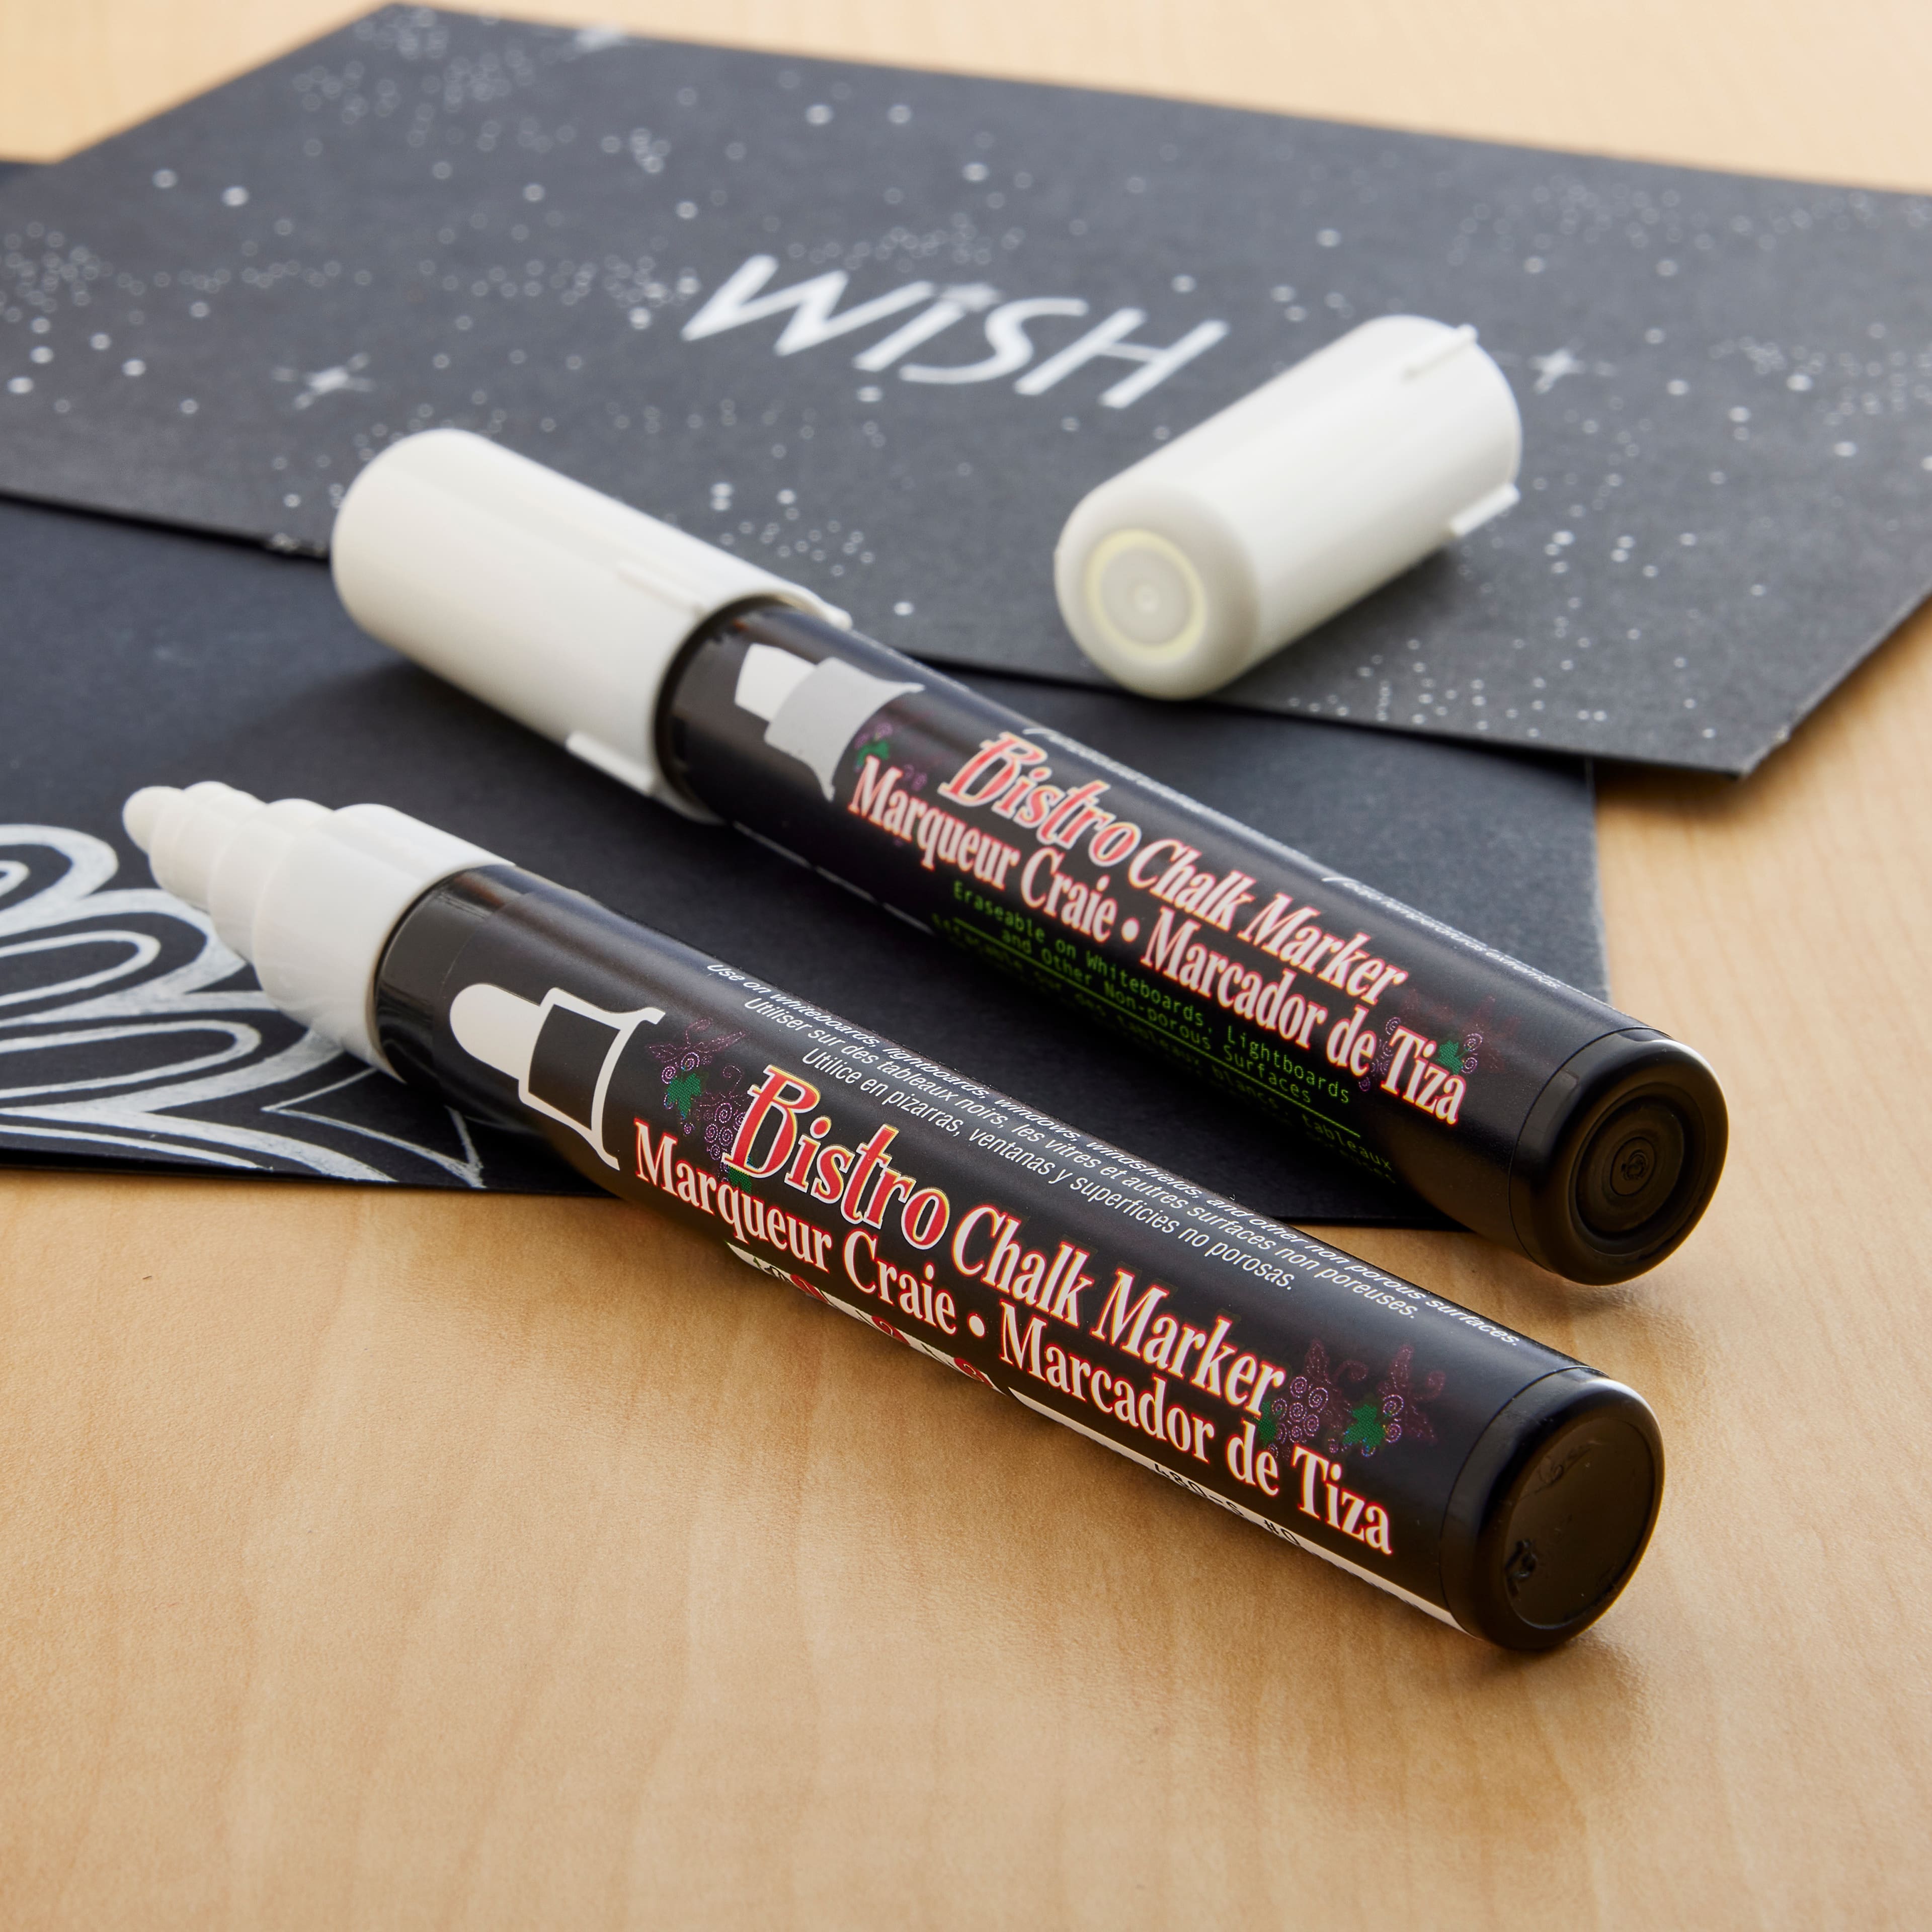 Liquid Chalk Marker - Medium & Wide-Tip Chalk Pen - Bistro Chalk Blue / Pack of 1 / Wide Tip